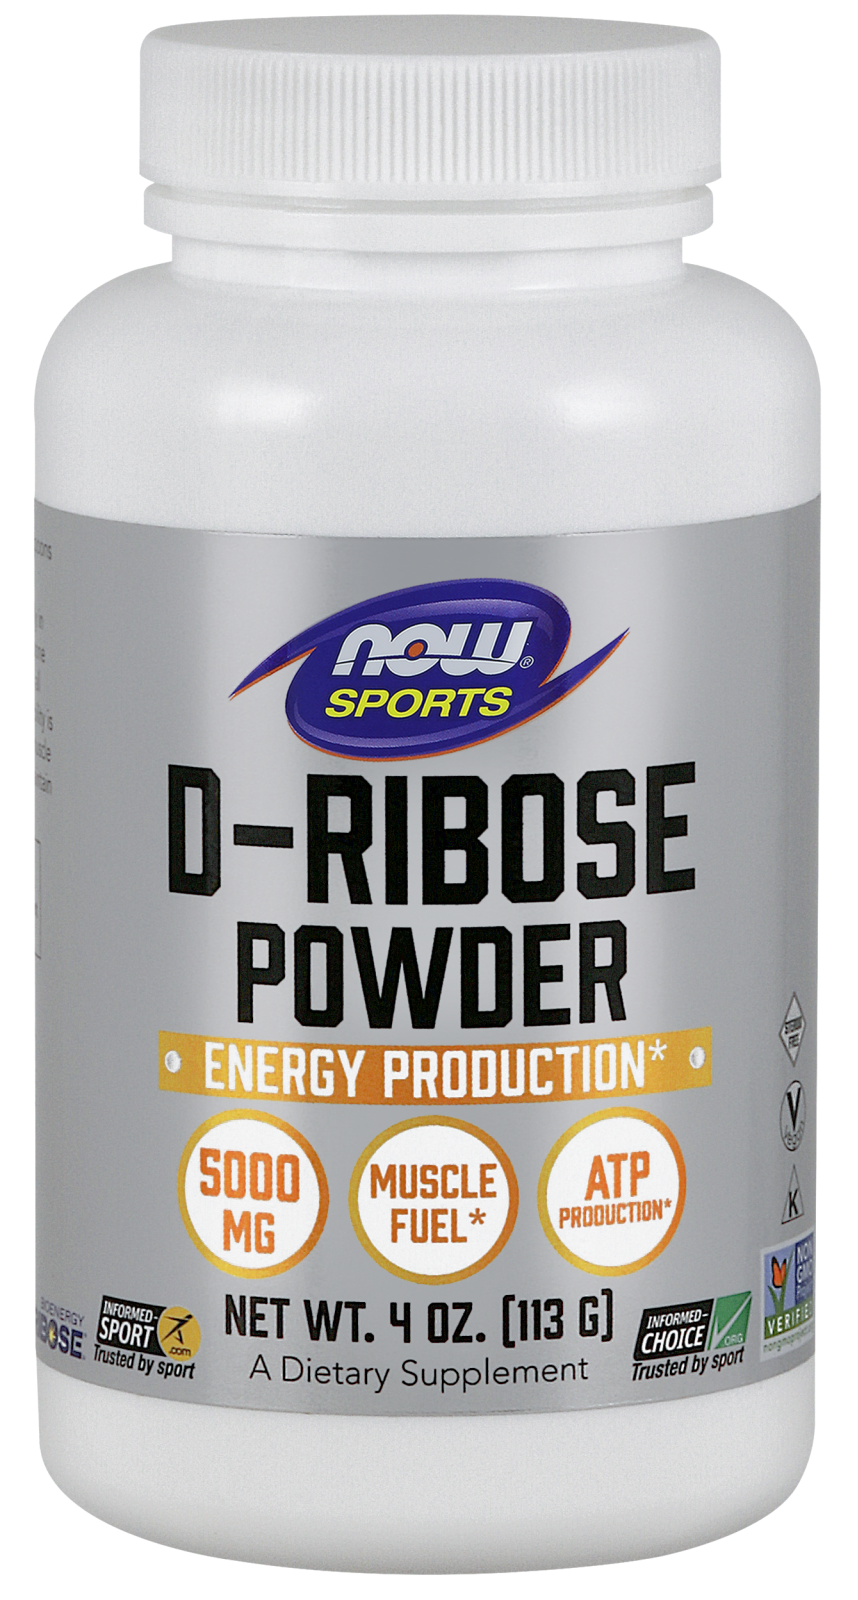 D-Ribose Powder - 4 oz.